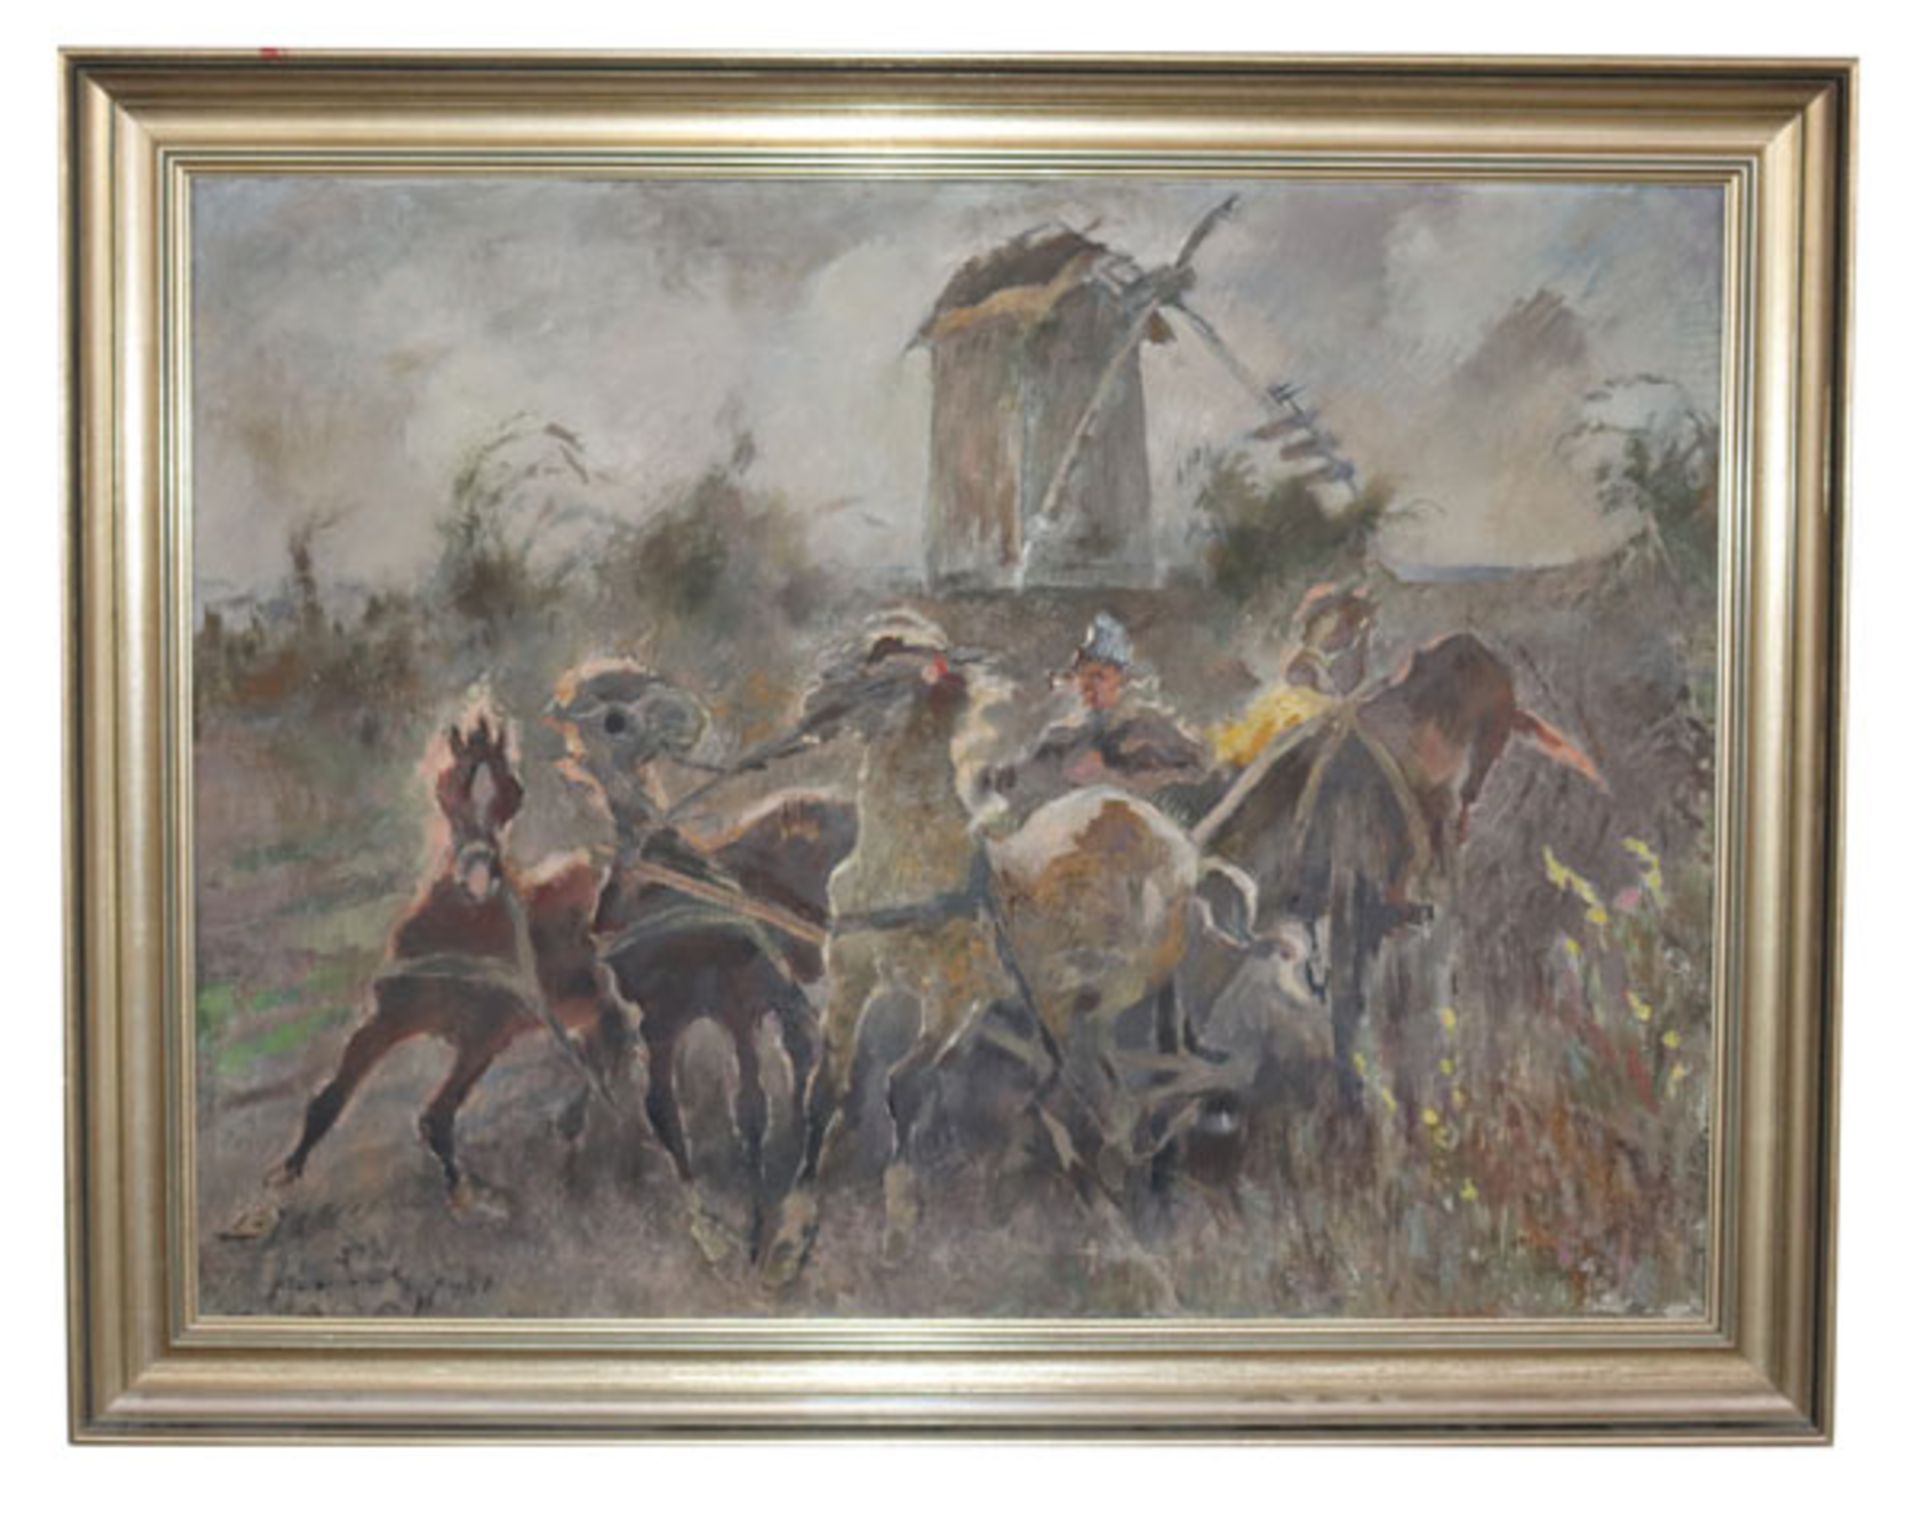 Gemälde ÖL/LW 'Wildpferde', undeutlich signiert, datiert 1940, gerahmt, Rahmen leicht berieben,